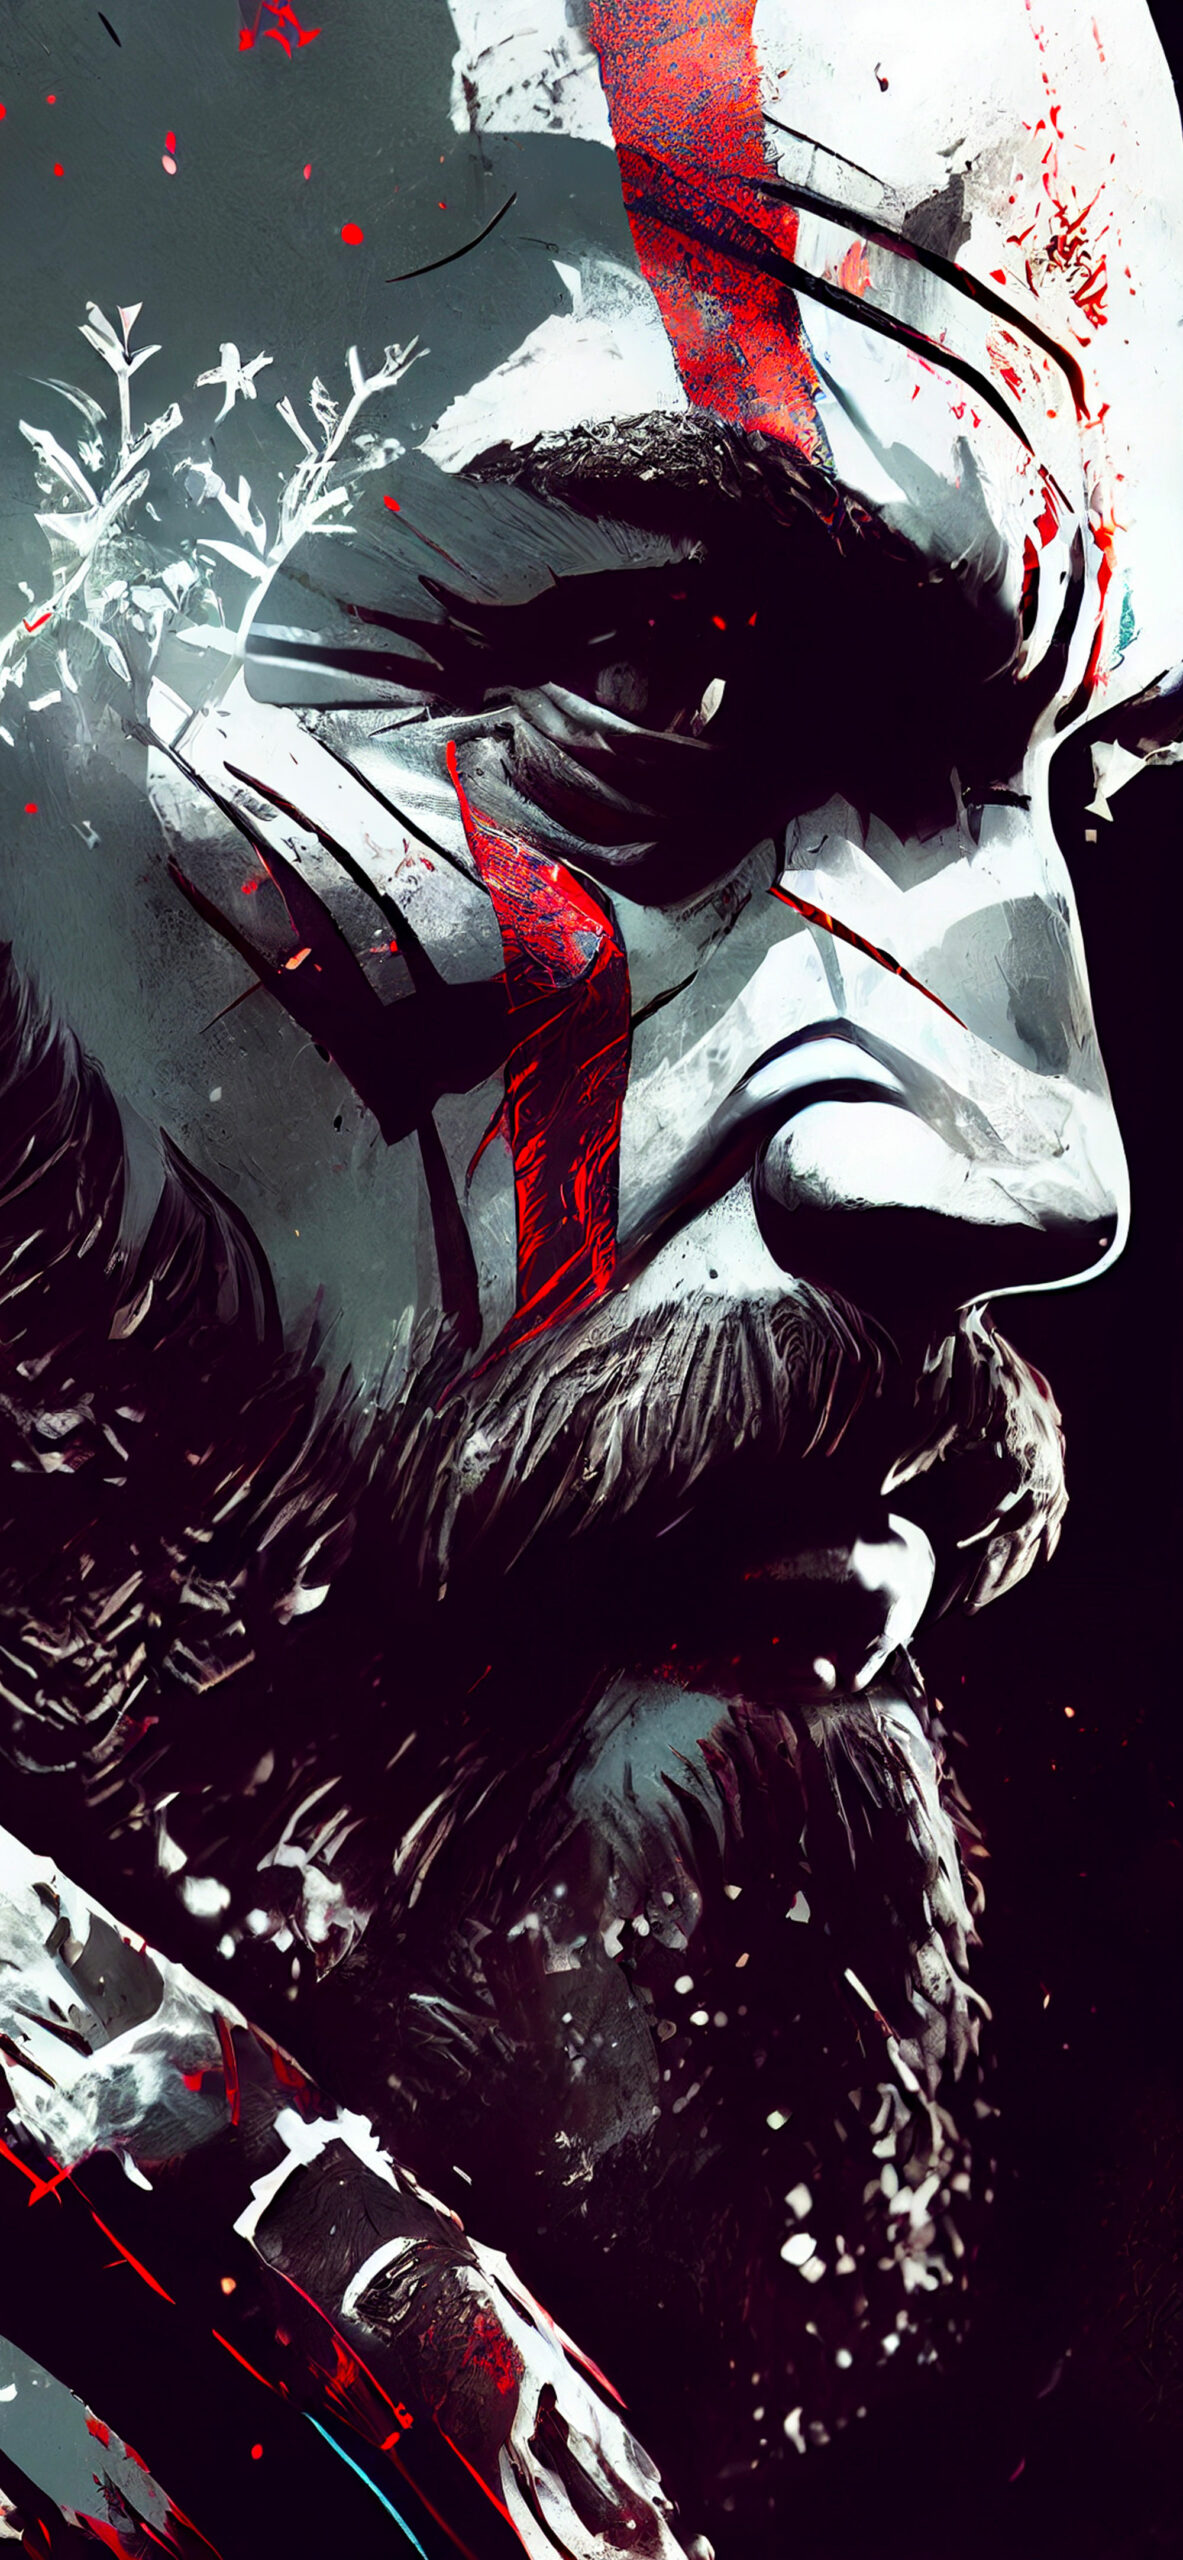 God of War Kratos Art Wallpapers - Cool God of War Wallpaper 4K